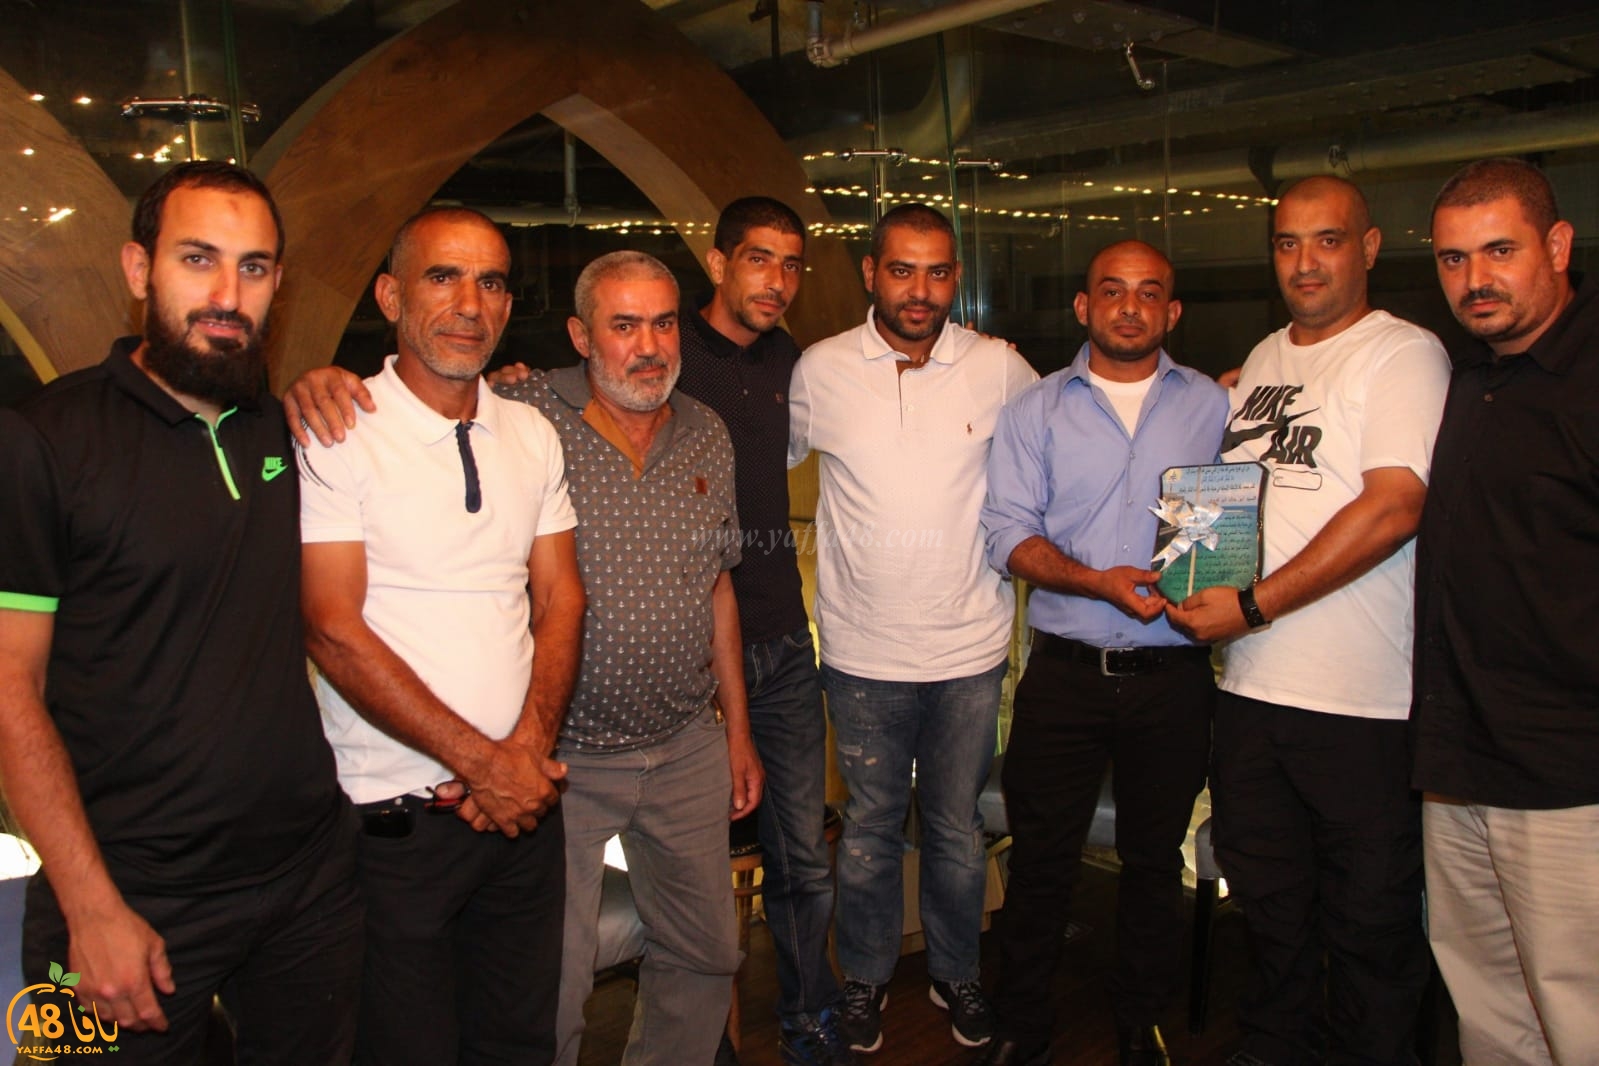 بالصور: جمعية يافا للاغاثة الانسانية تُكرّم المشاركين في مشروع الاضاحي بالمدينة